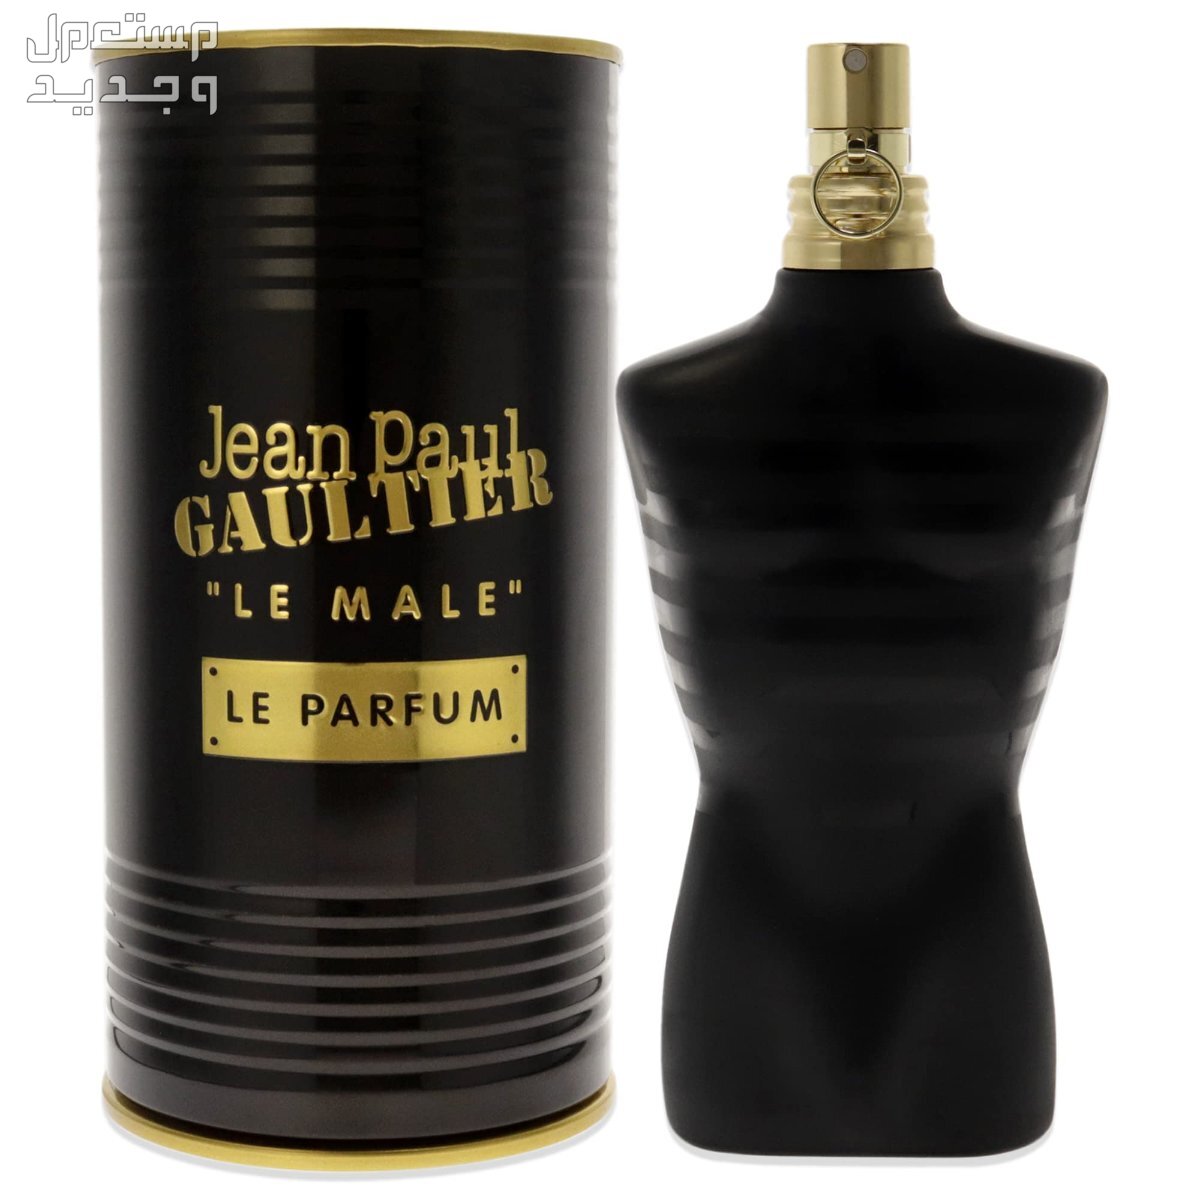 أقوى عطر فانيلا رجالي بأفضل سعر في ليبيا عطر Jean Paul Gaultier Le Male Le Parfum